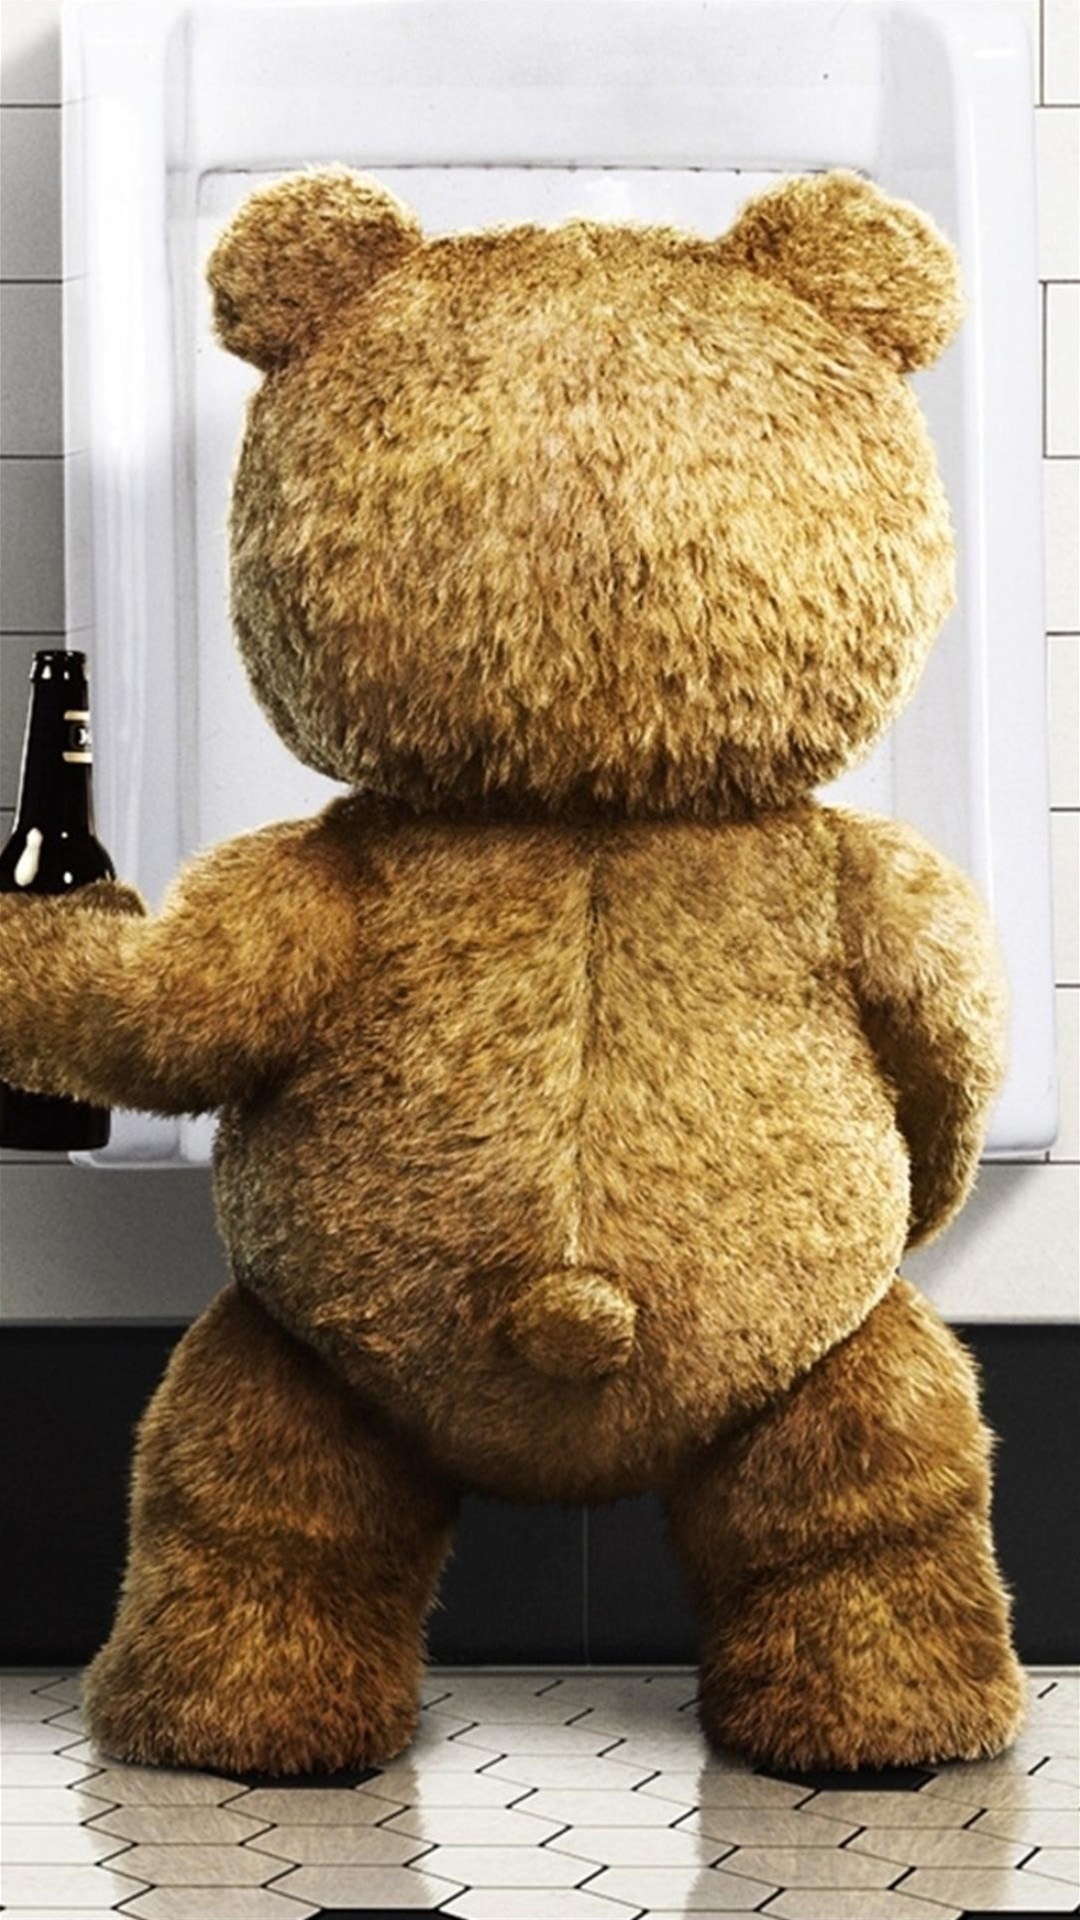 泰迪熊喝啤酒